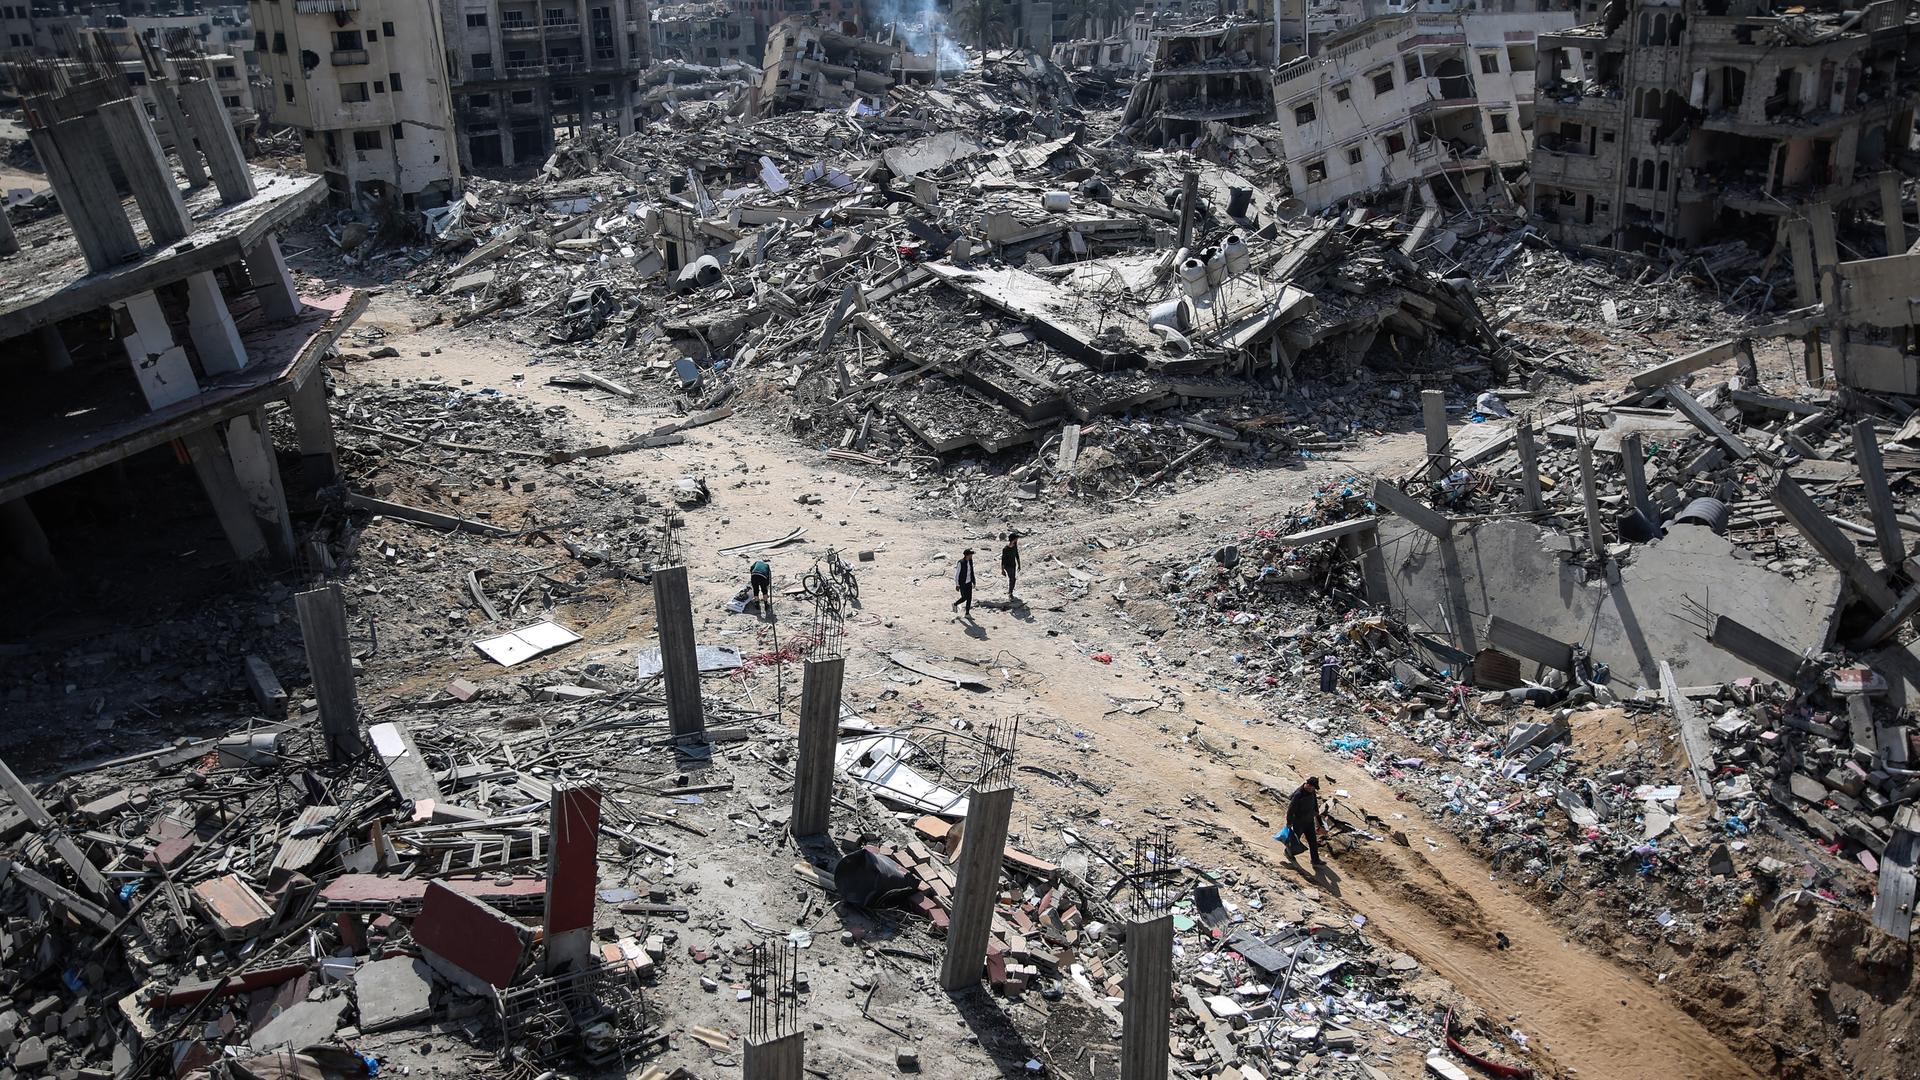 Palästinenser laufen nach einem Bombenangriff durch Ruinen.